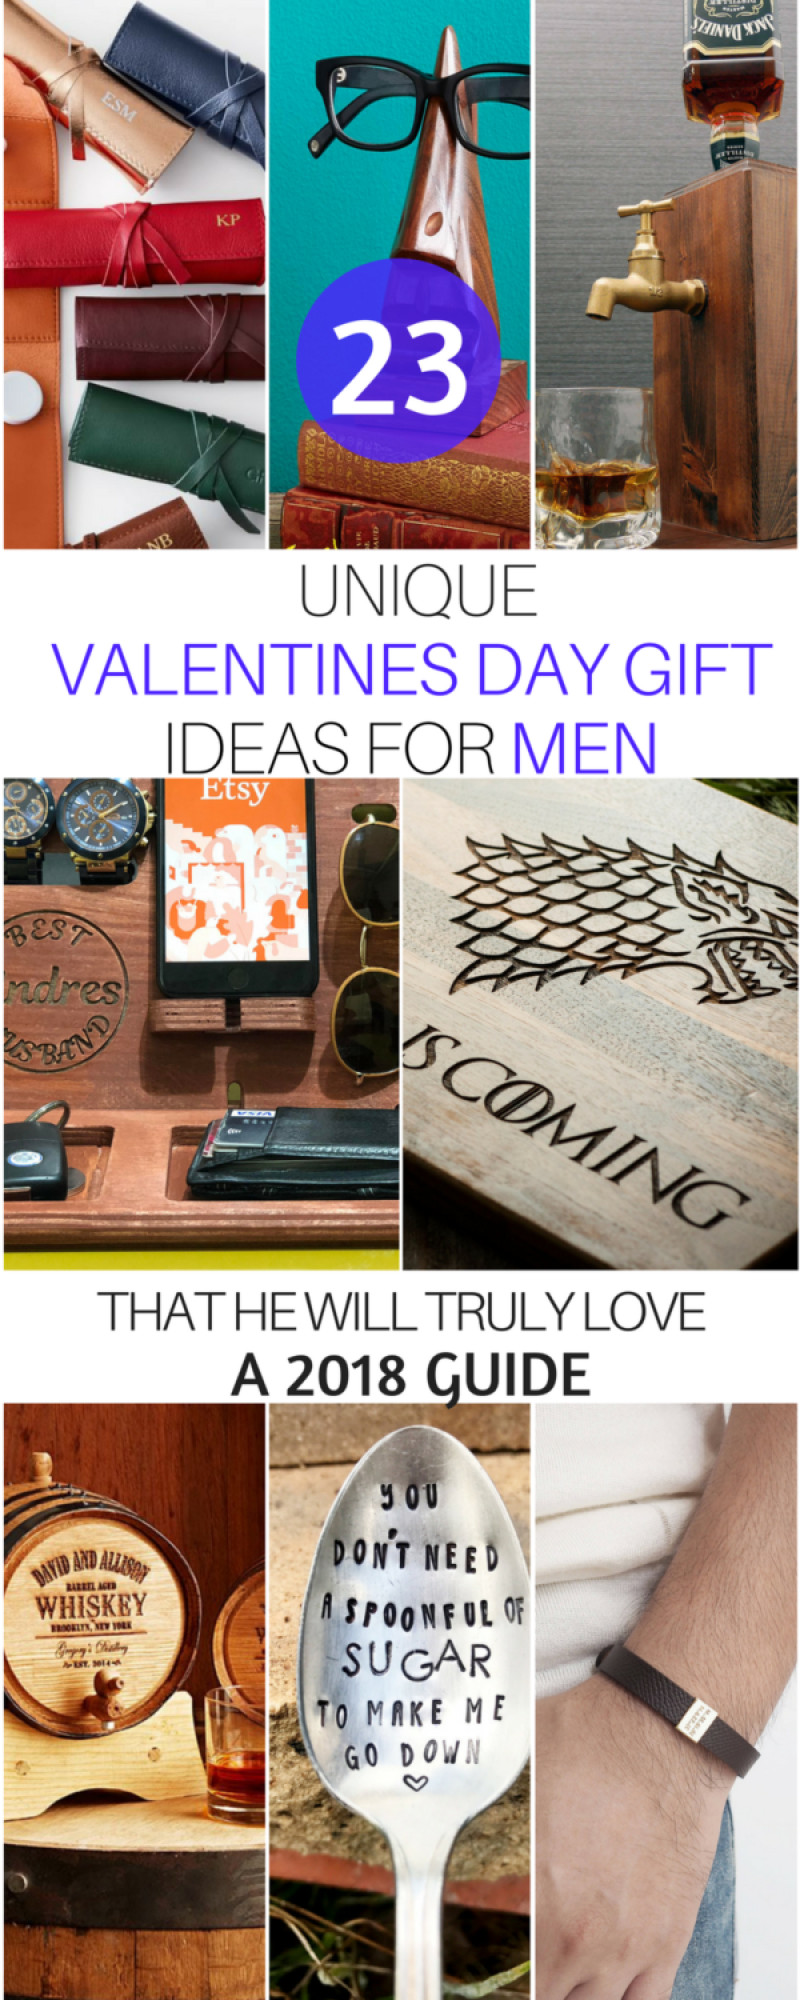 Best ideas about Unique Gift Ideas For Men
. Save or Pin 23 Unique Gift Ideas for Men Who Have Everything Best Now.